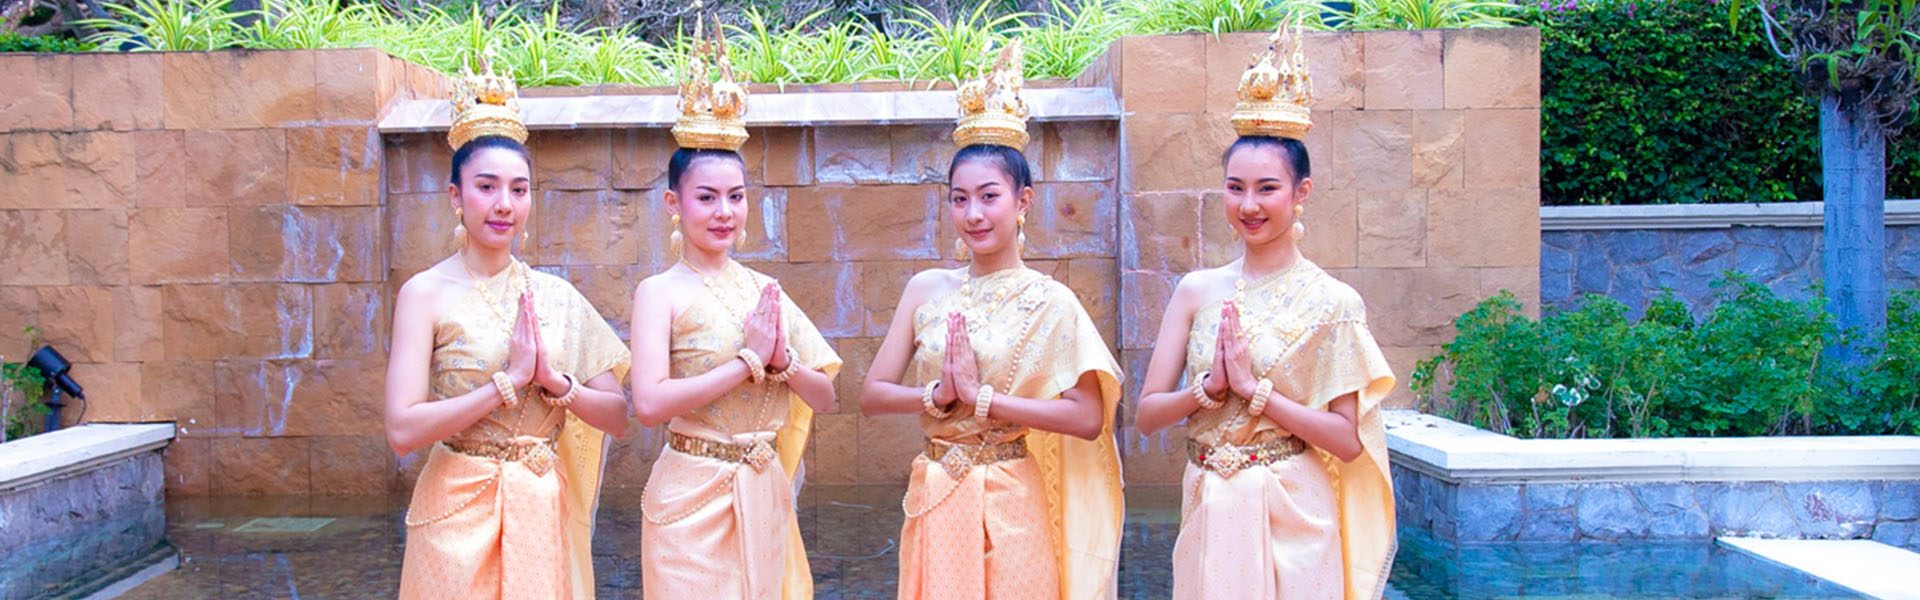 Thai Welcome Dance